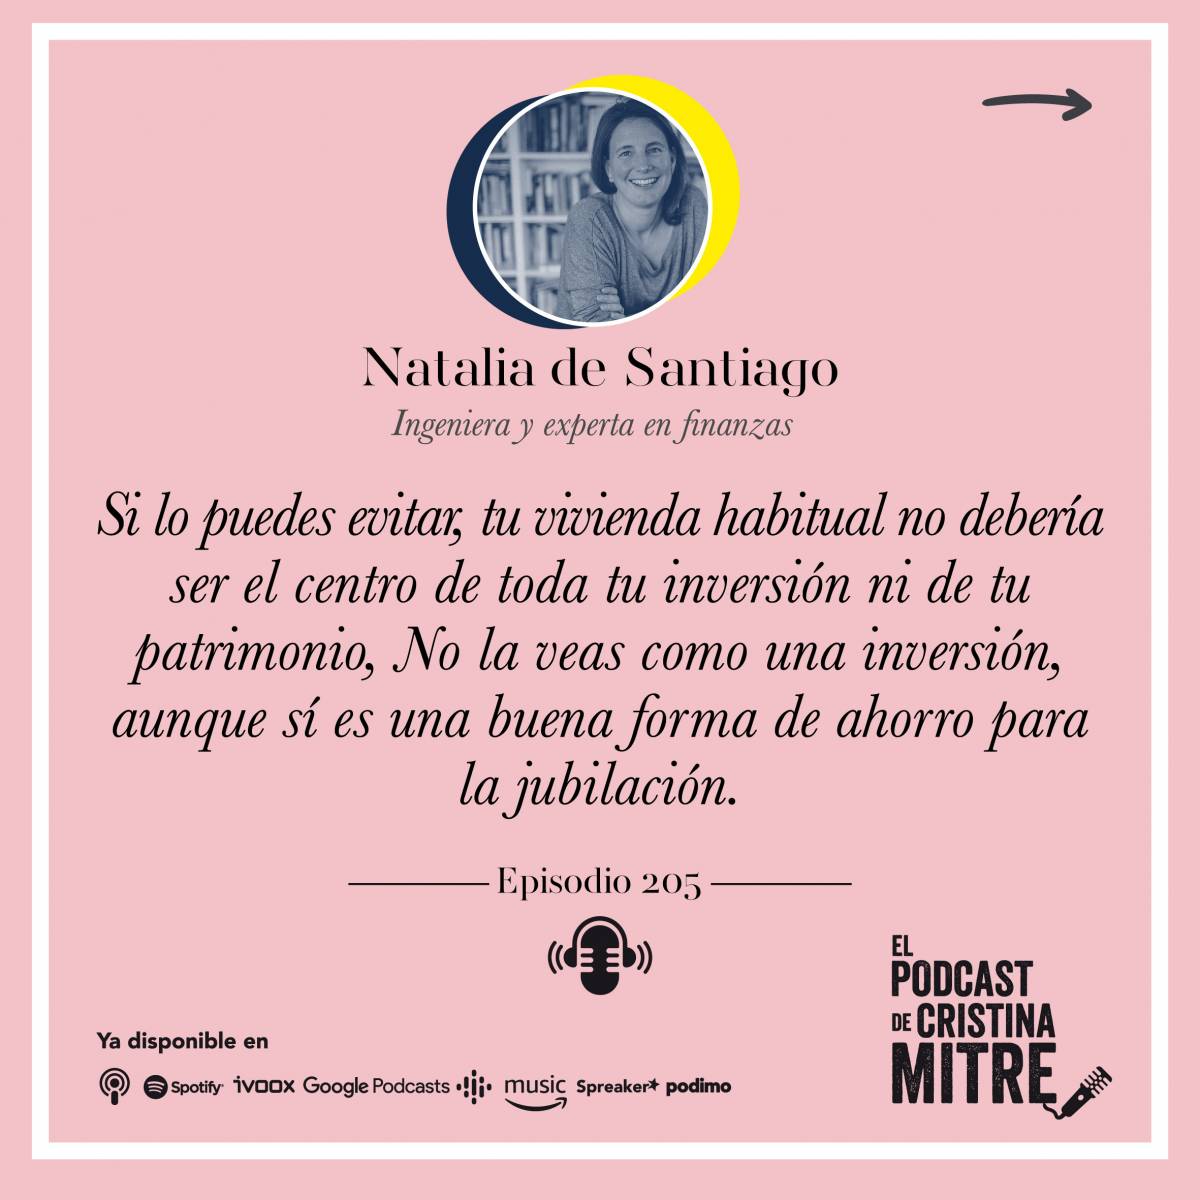 Podcast Cristina Mitre Natalia de Santiago vivienda habitual